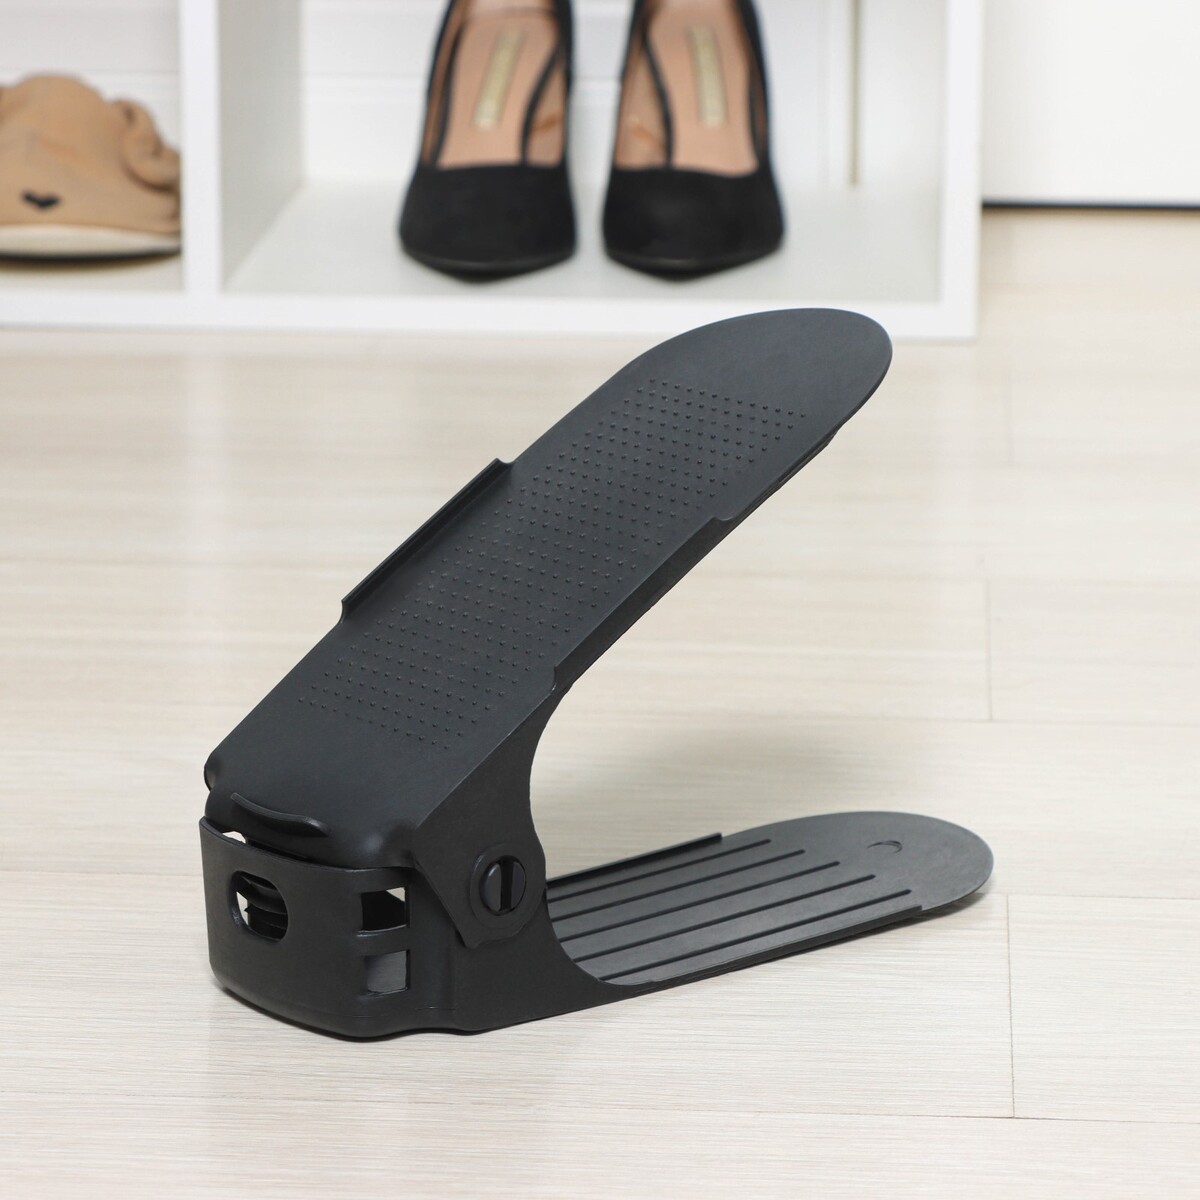 Подставка для хранения обуви регулируемая, 26×10×6 см, цвет черный подставка для обуви 5 и женева 15 1060 450 270 мм пдо ж15 ч